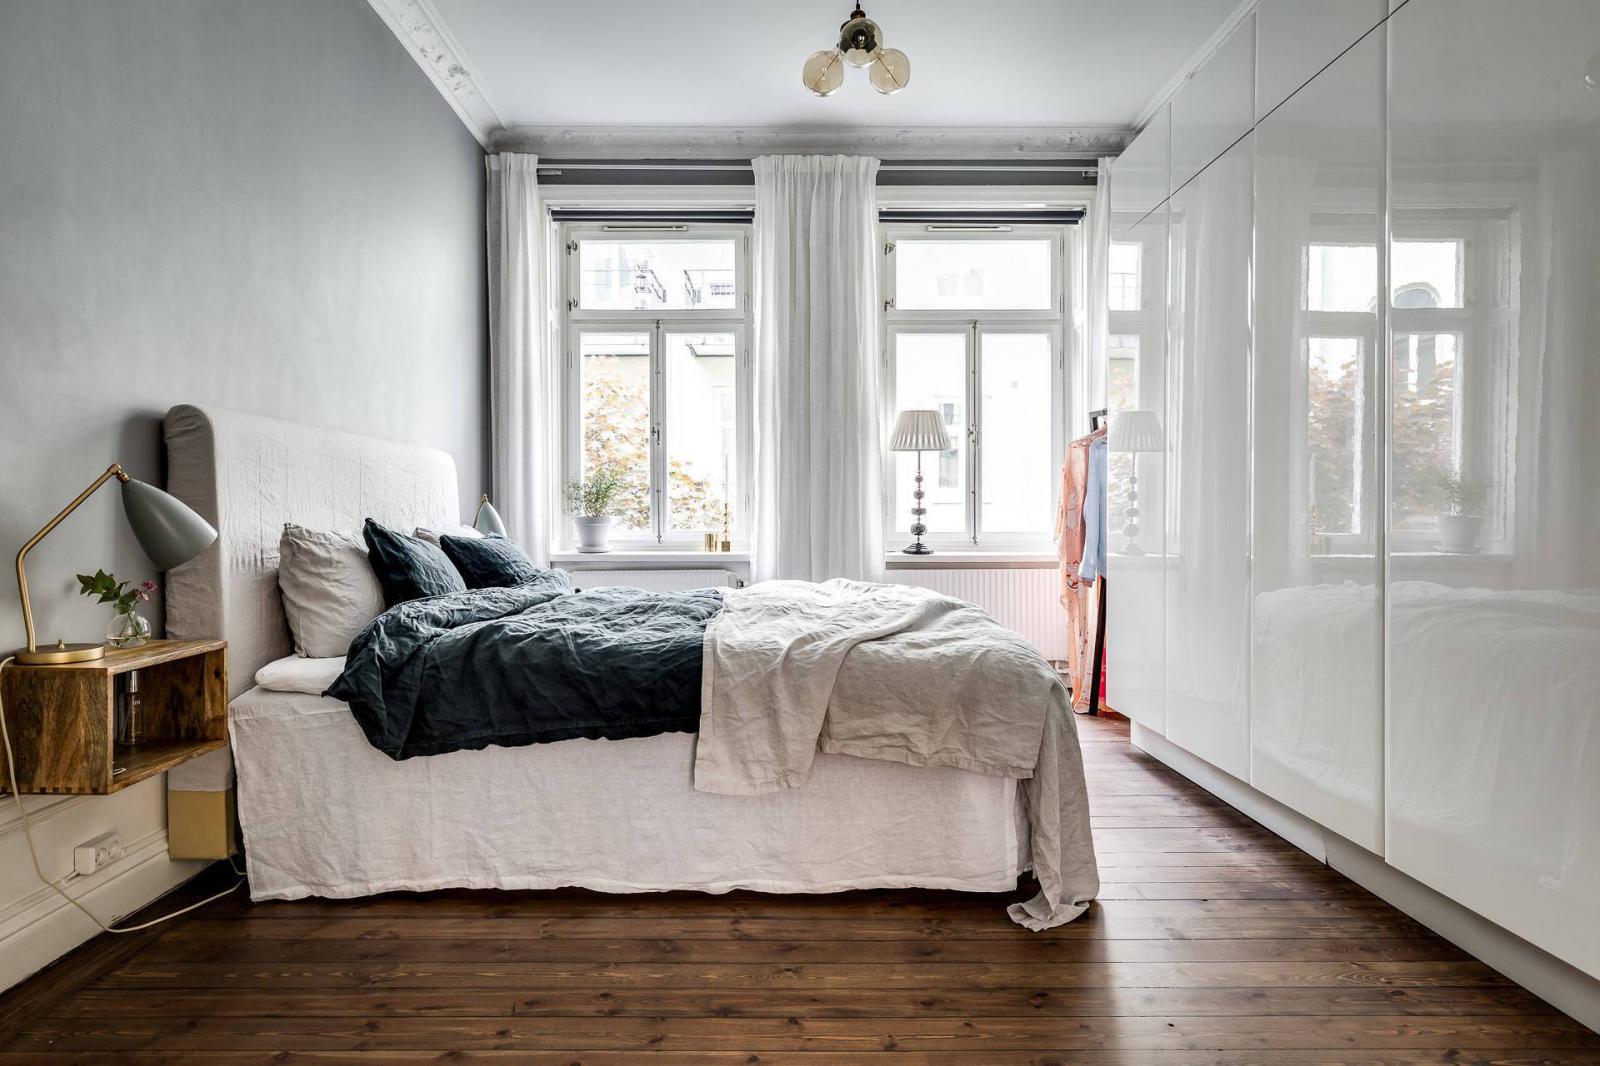 Hình ảnh toàn cảnh phòng ngủ với tủ quần áo âm tường màu trắng, kệ gỗ đầu giường, cửa sổ kính